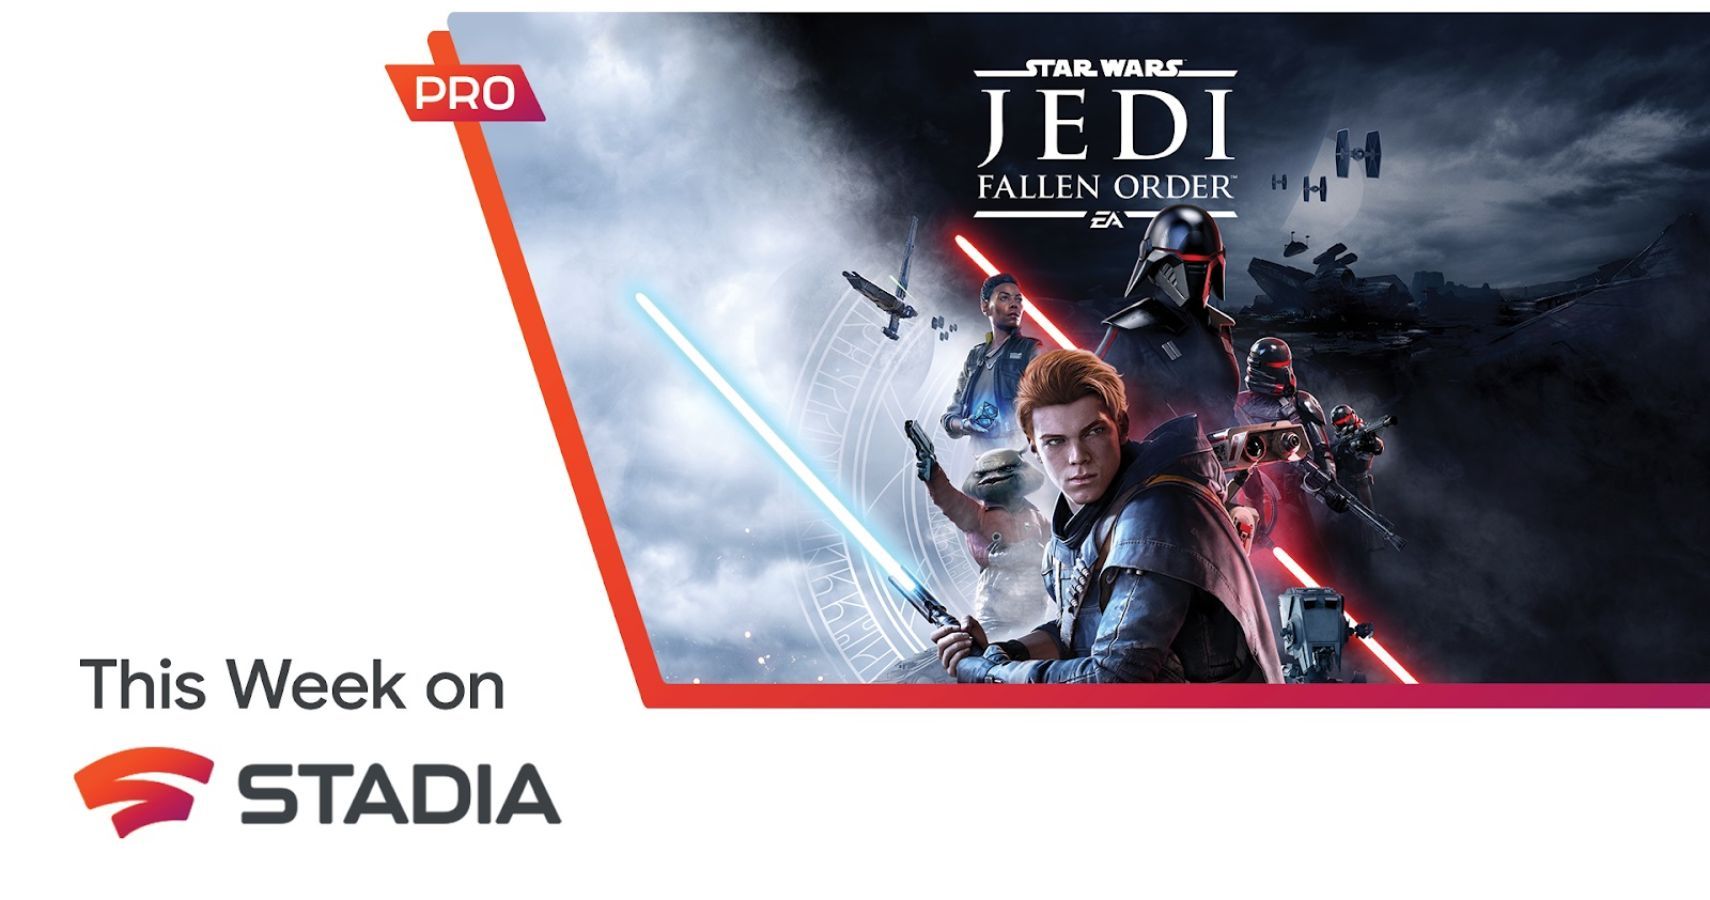 Star Wars Jedi: Fallen Order - IGN